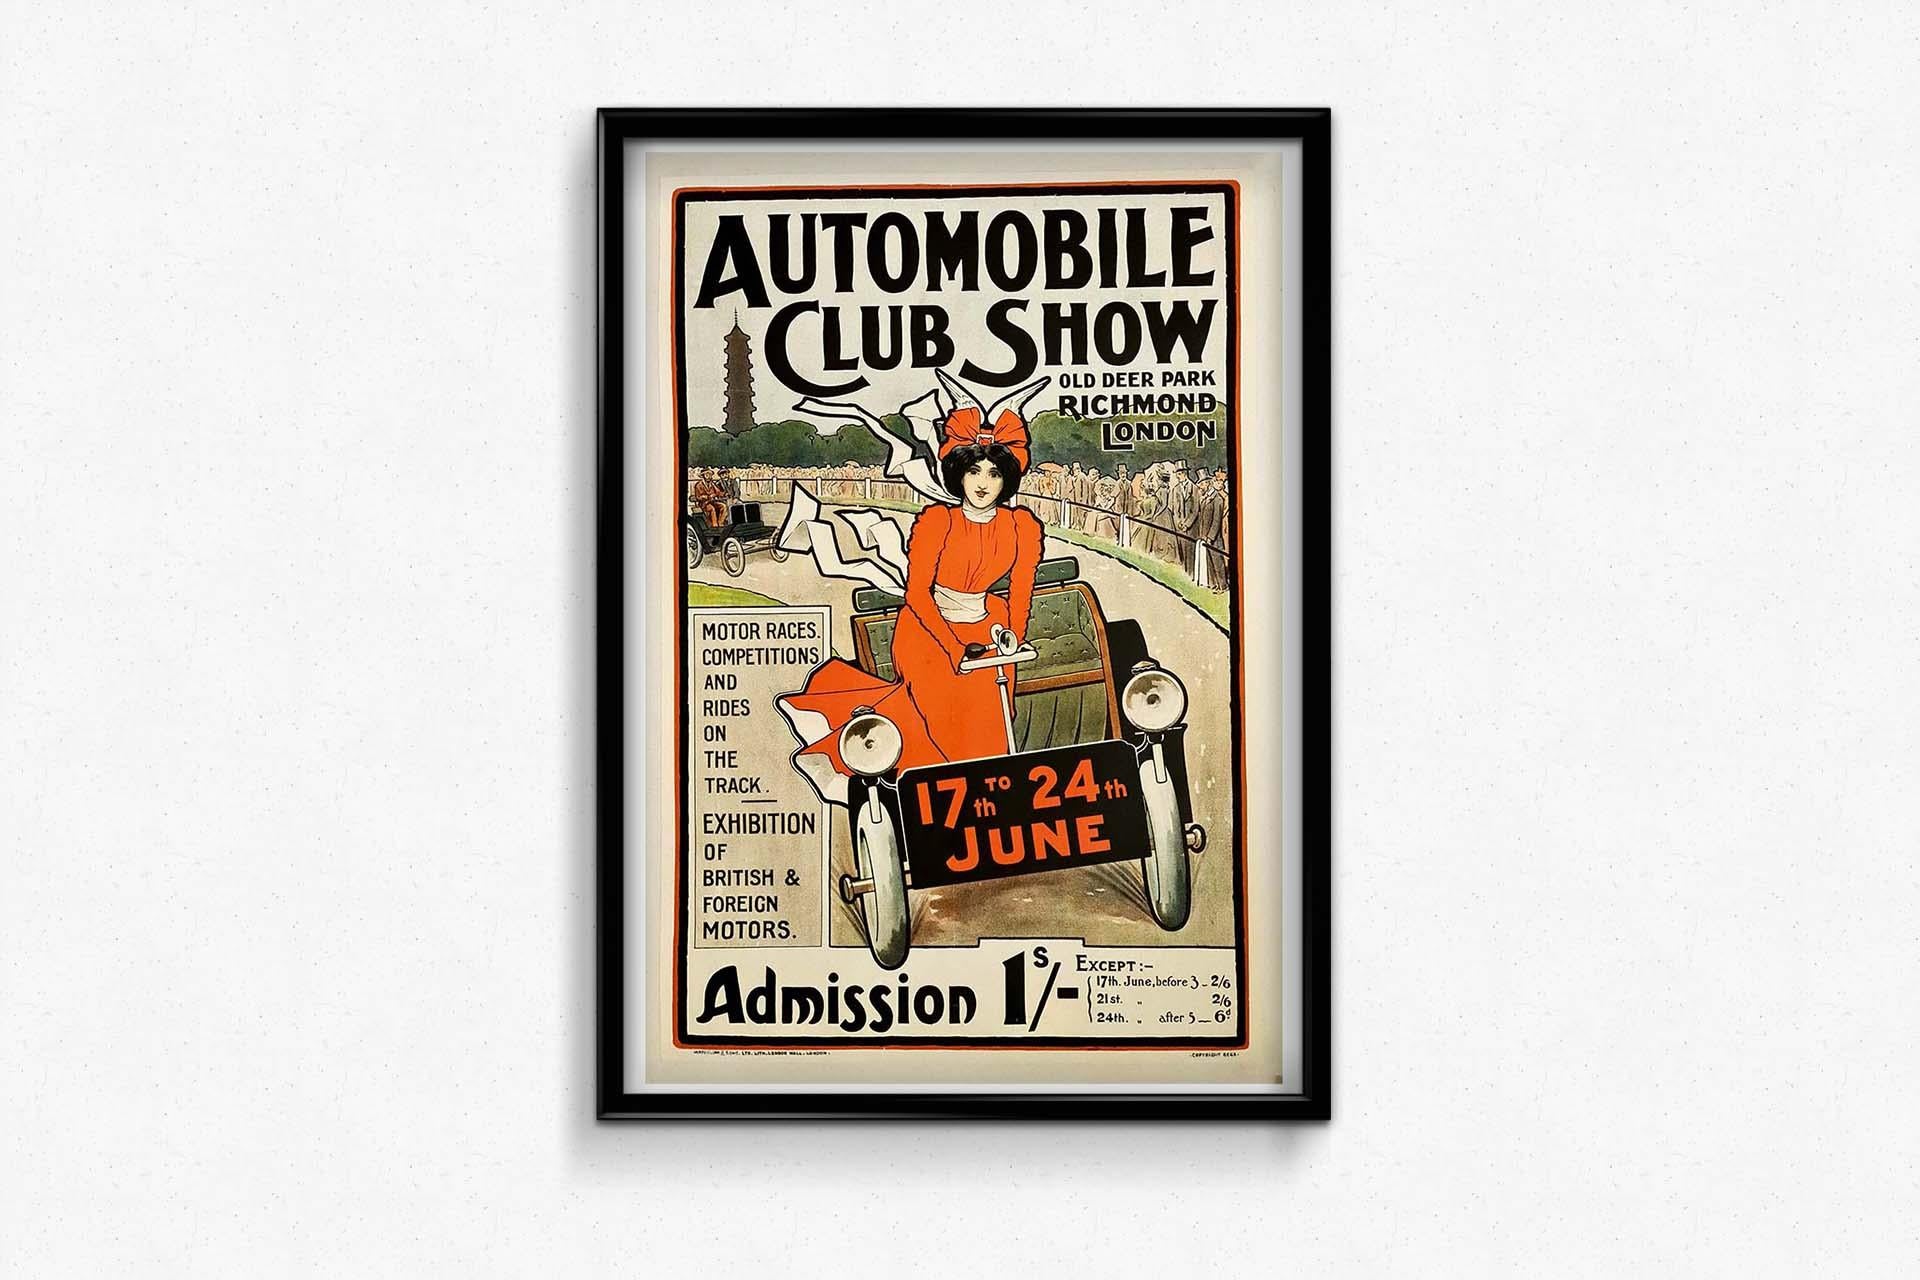 Schönes Plakat im Jugendstil, das 1910 von Walter Sneed Rogers zur Werbung für die Automobile Club Show im Old Deer Park in London hergestellt wurde.

Der Automobilclub veranstaltete seine erste Ausstellung im Old Deer Park in Richmond im Juni 1899.